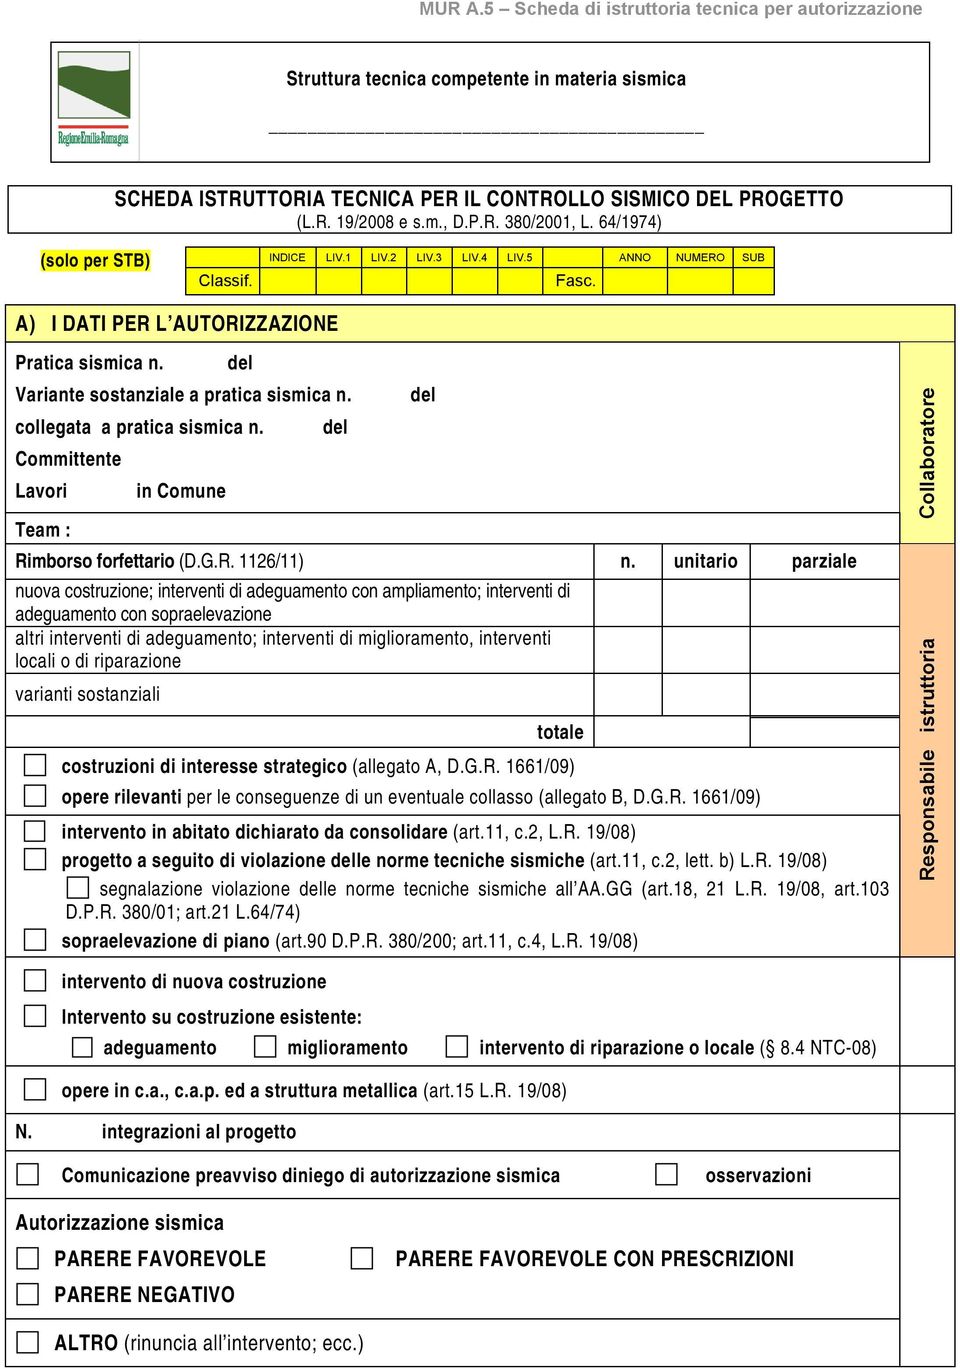 collegata a pratica sismica n. Committente Lavori Team : in Comune del del Rimborso forfettario (D.G.R. 1126/11) n.